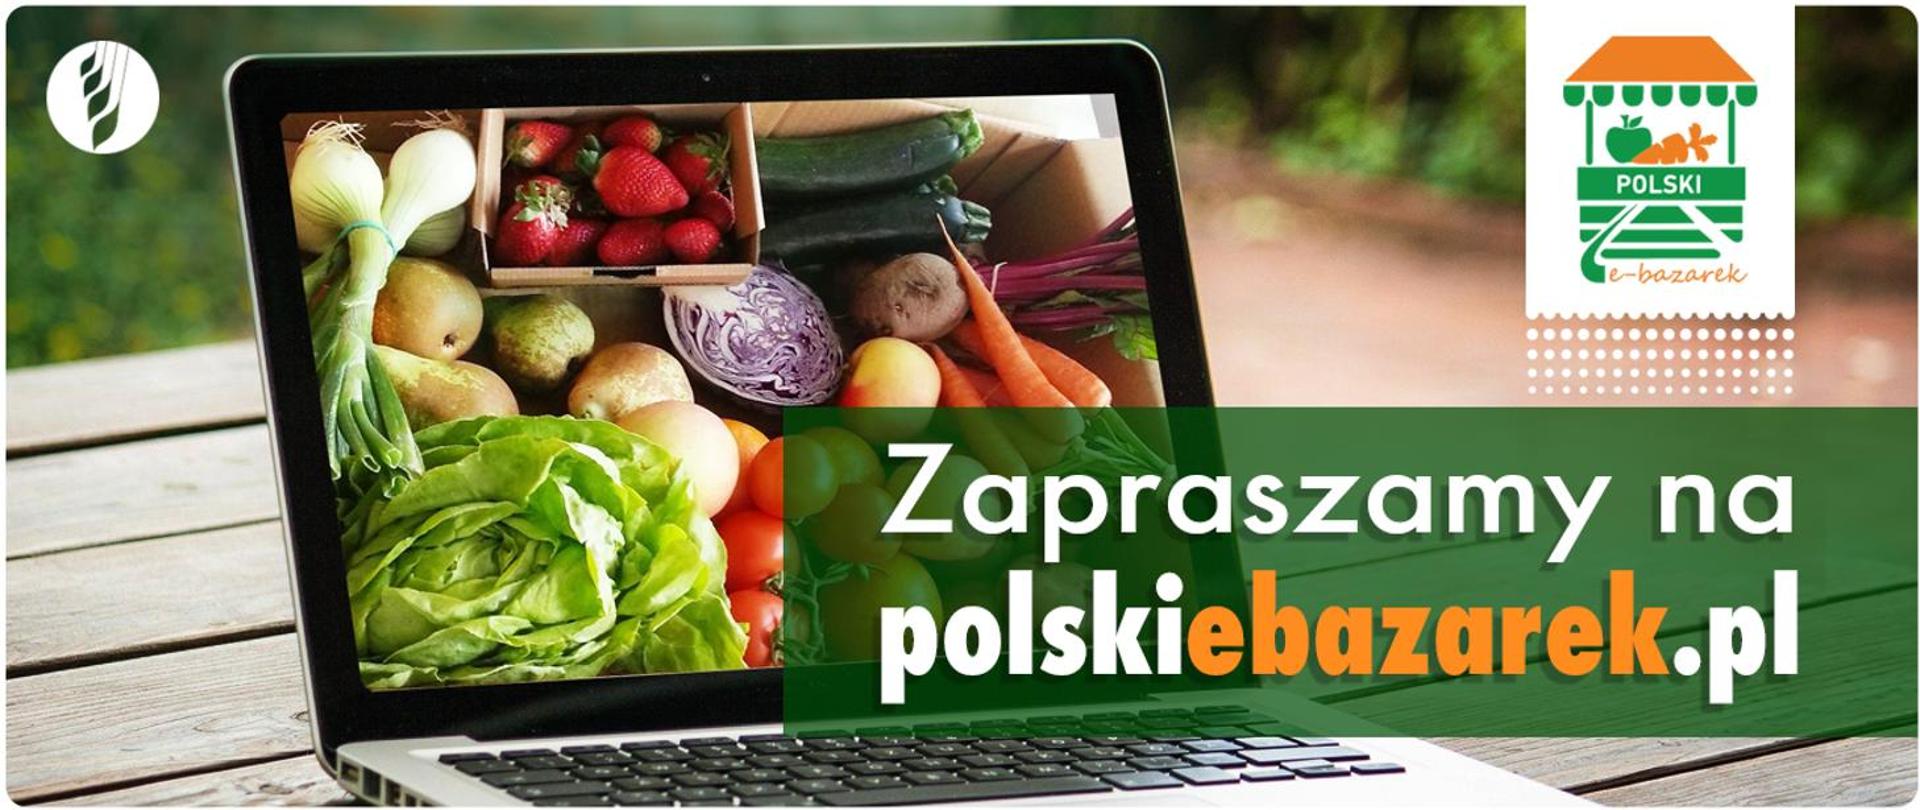 Cudze chwalicie, swoje poznajcie – zapraszamy na polskiebazarek.pl